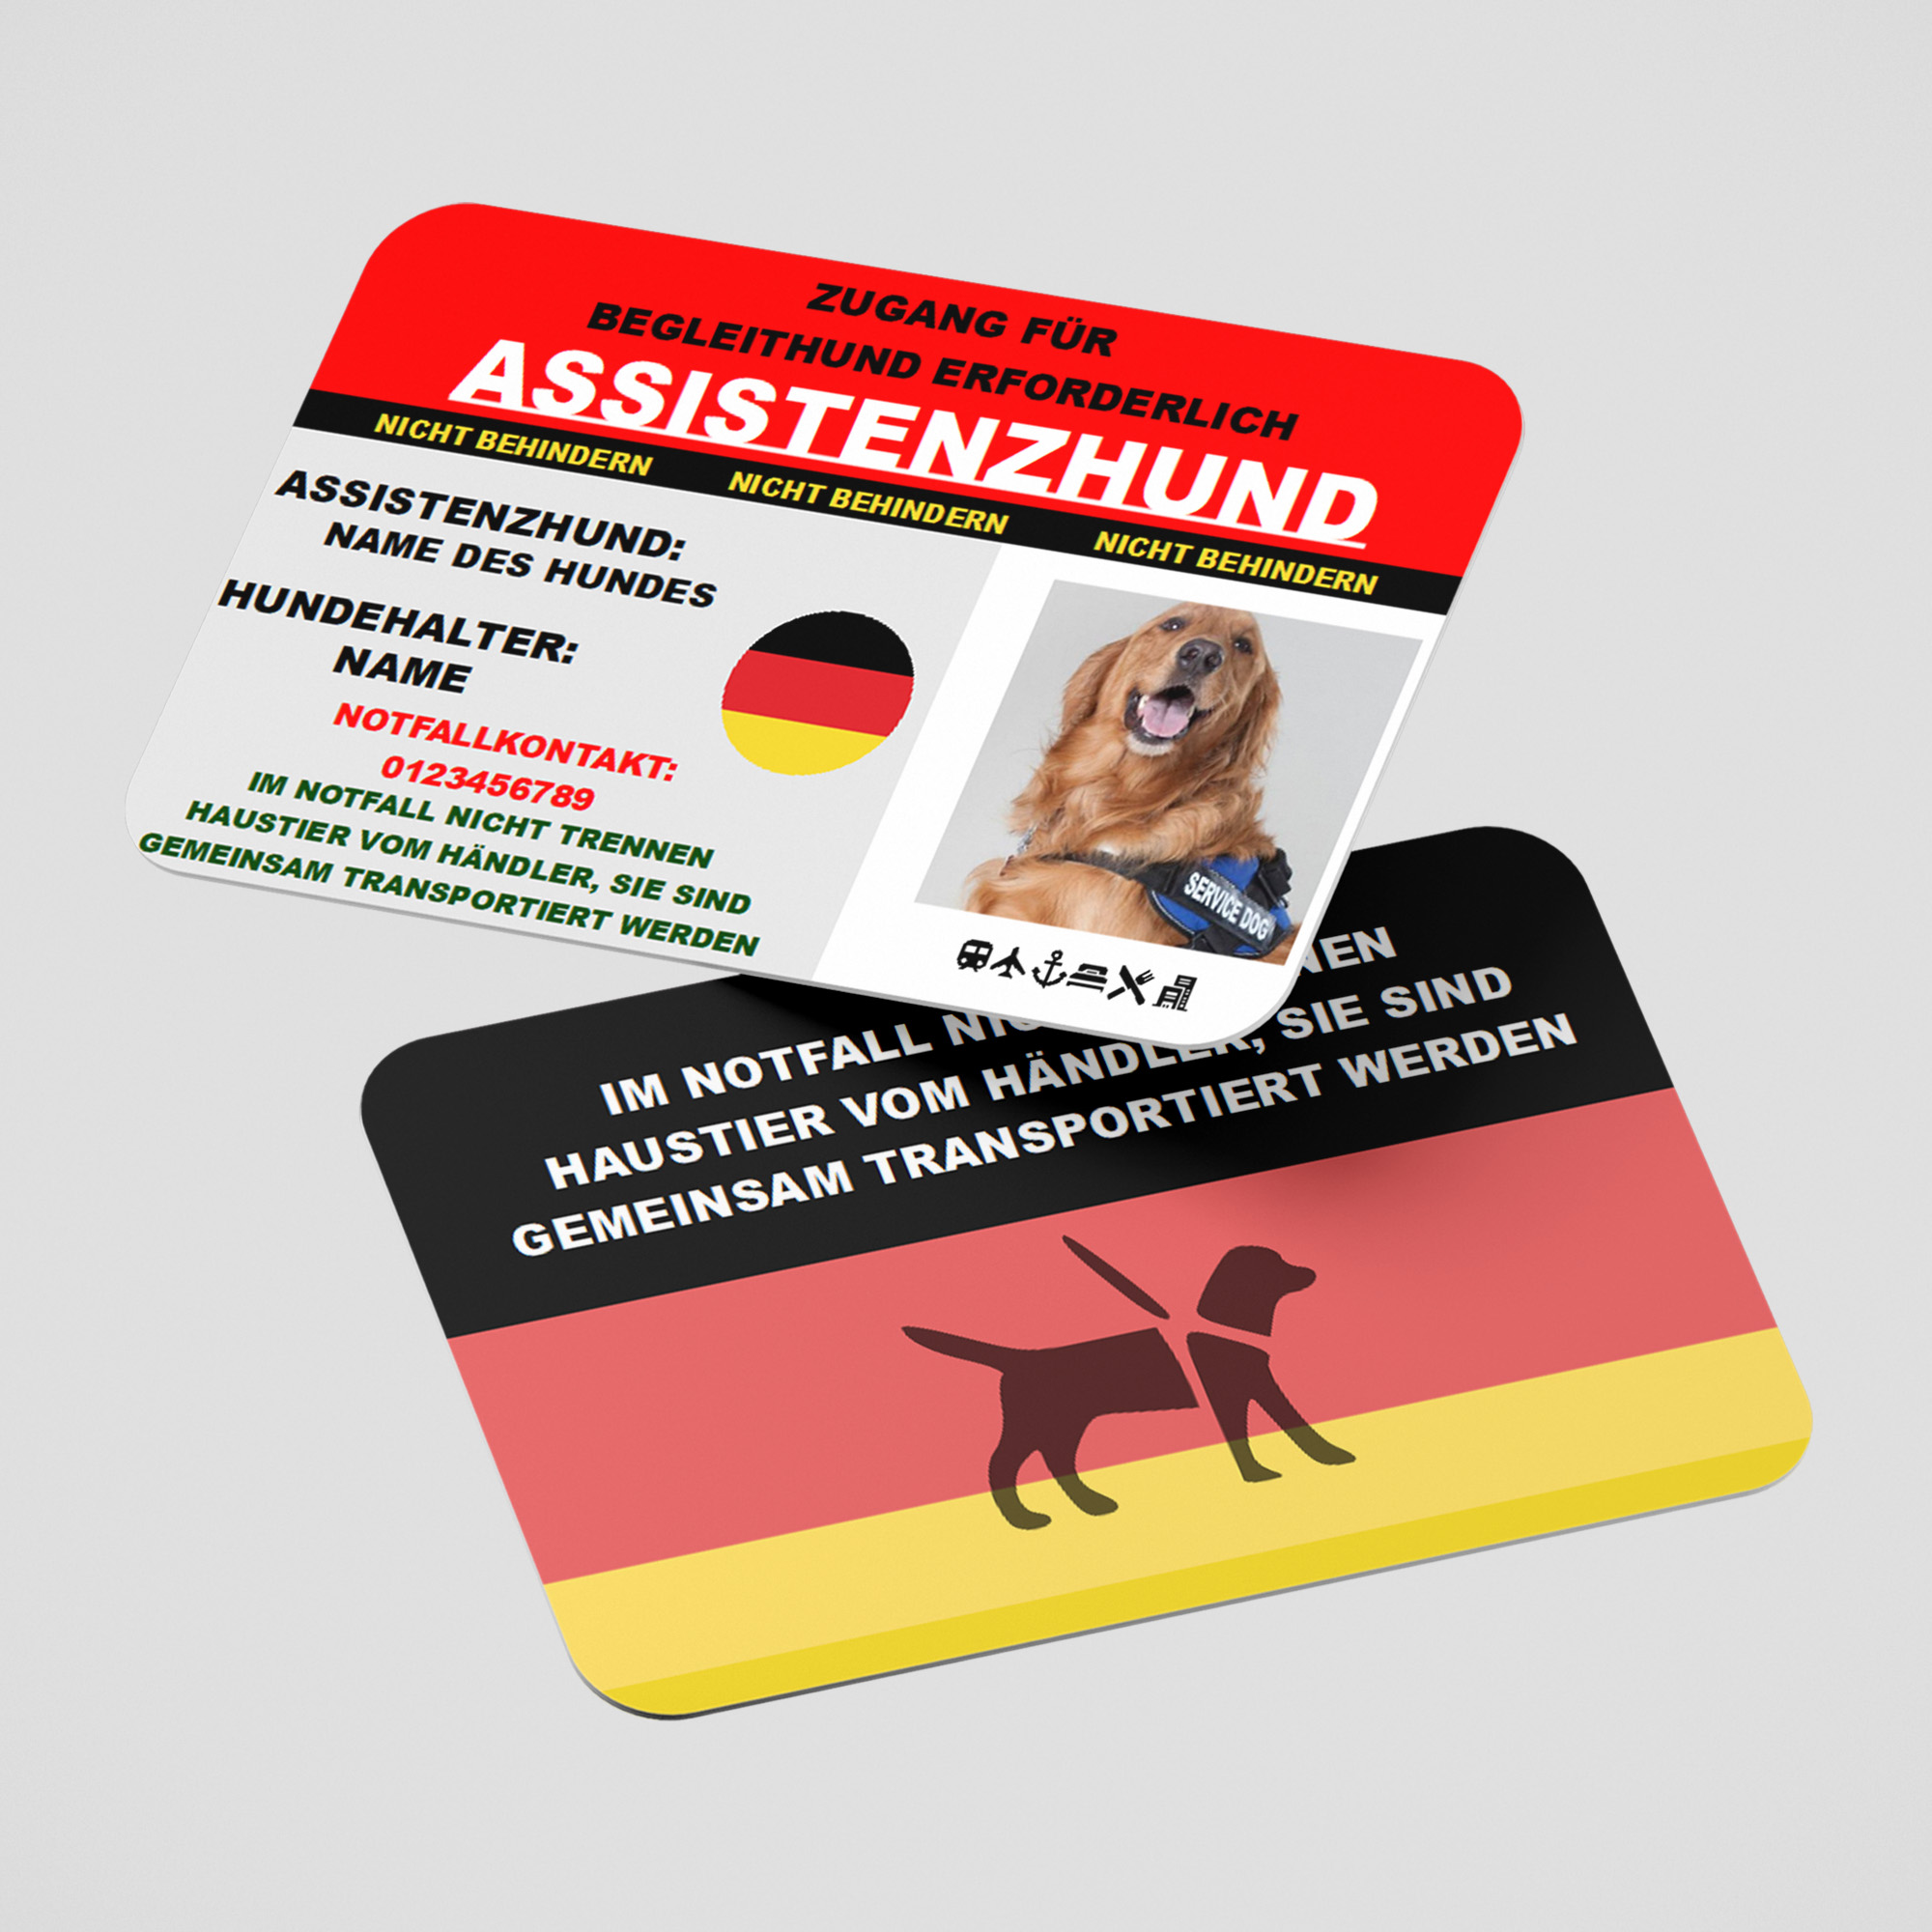 Assistance Dog Card - GERMAN - Assistenzhundekarte